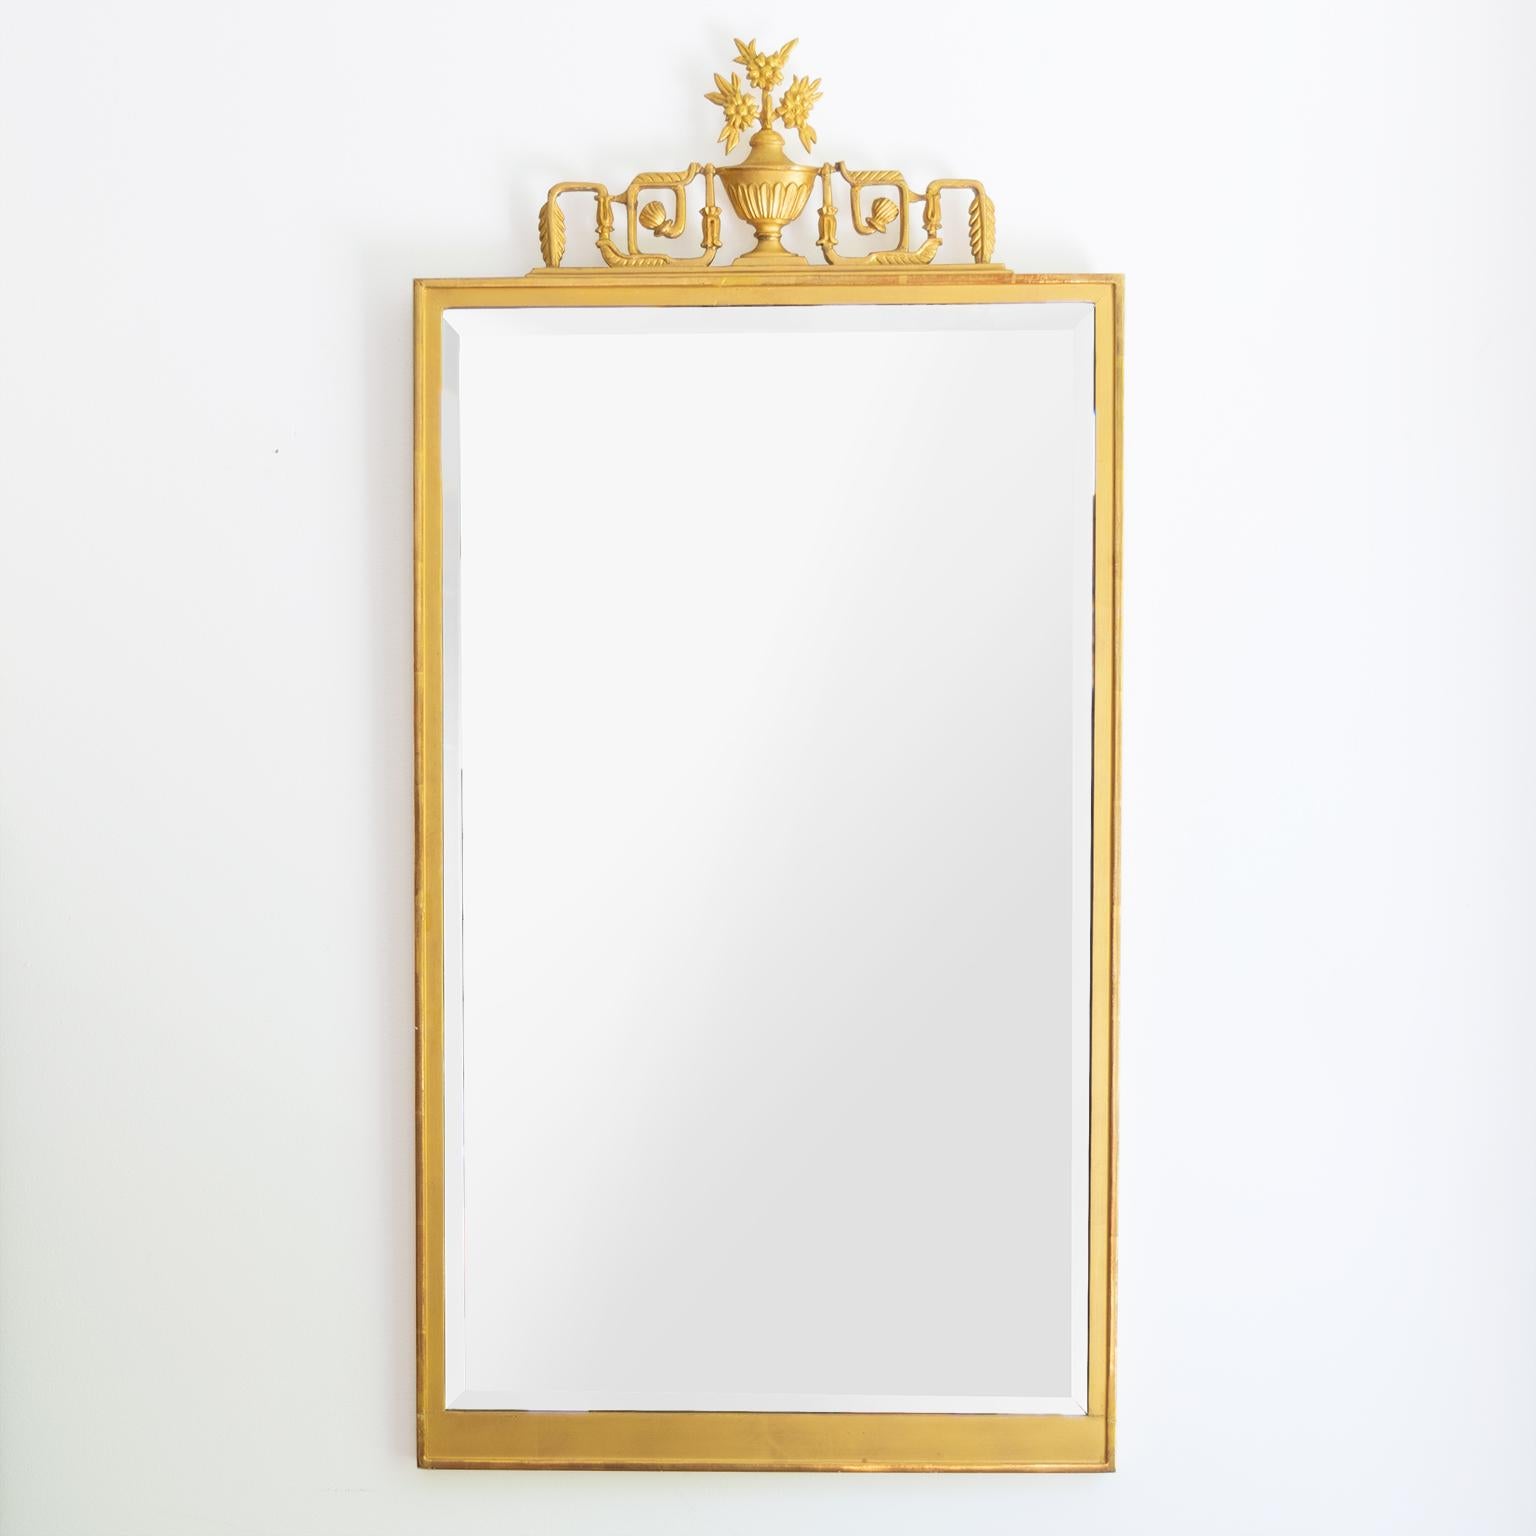 Schwedische Grace, Art Deco Spiegel aus vergoldetem Holz mit dekorativer Schnitzerei, die eine neoklassizistische Urne darstellt, die von einer Ranke in einem Mäander-Motiv flankiert wird. Der Spiegel behält sein ursprüngliches, abgeschrägtes